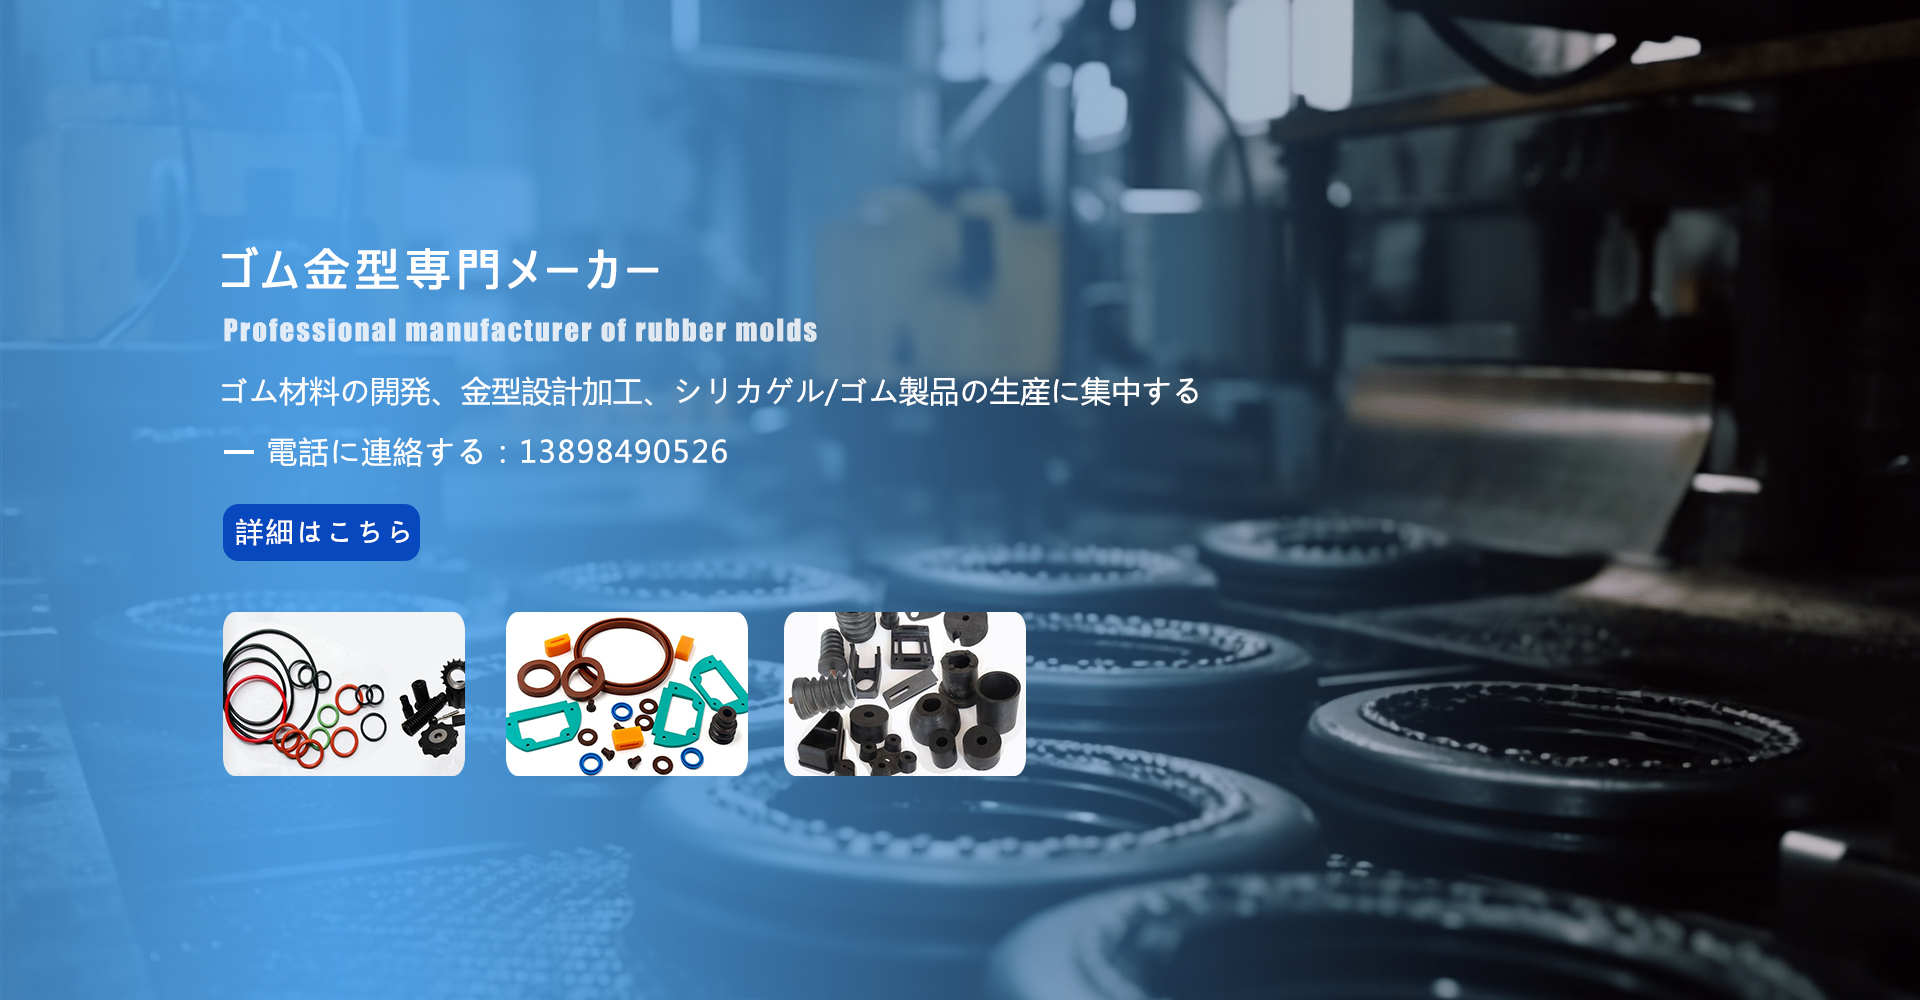 硅胶厂家,橡胶制品,橡胶模具设计|大连安格朗模具制品有限公司